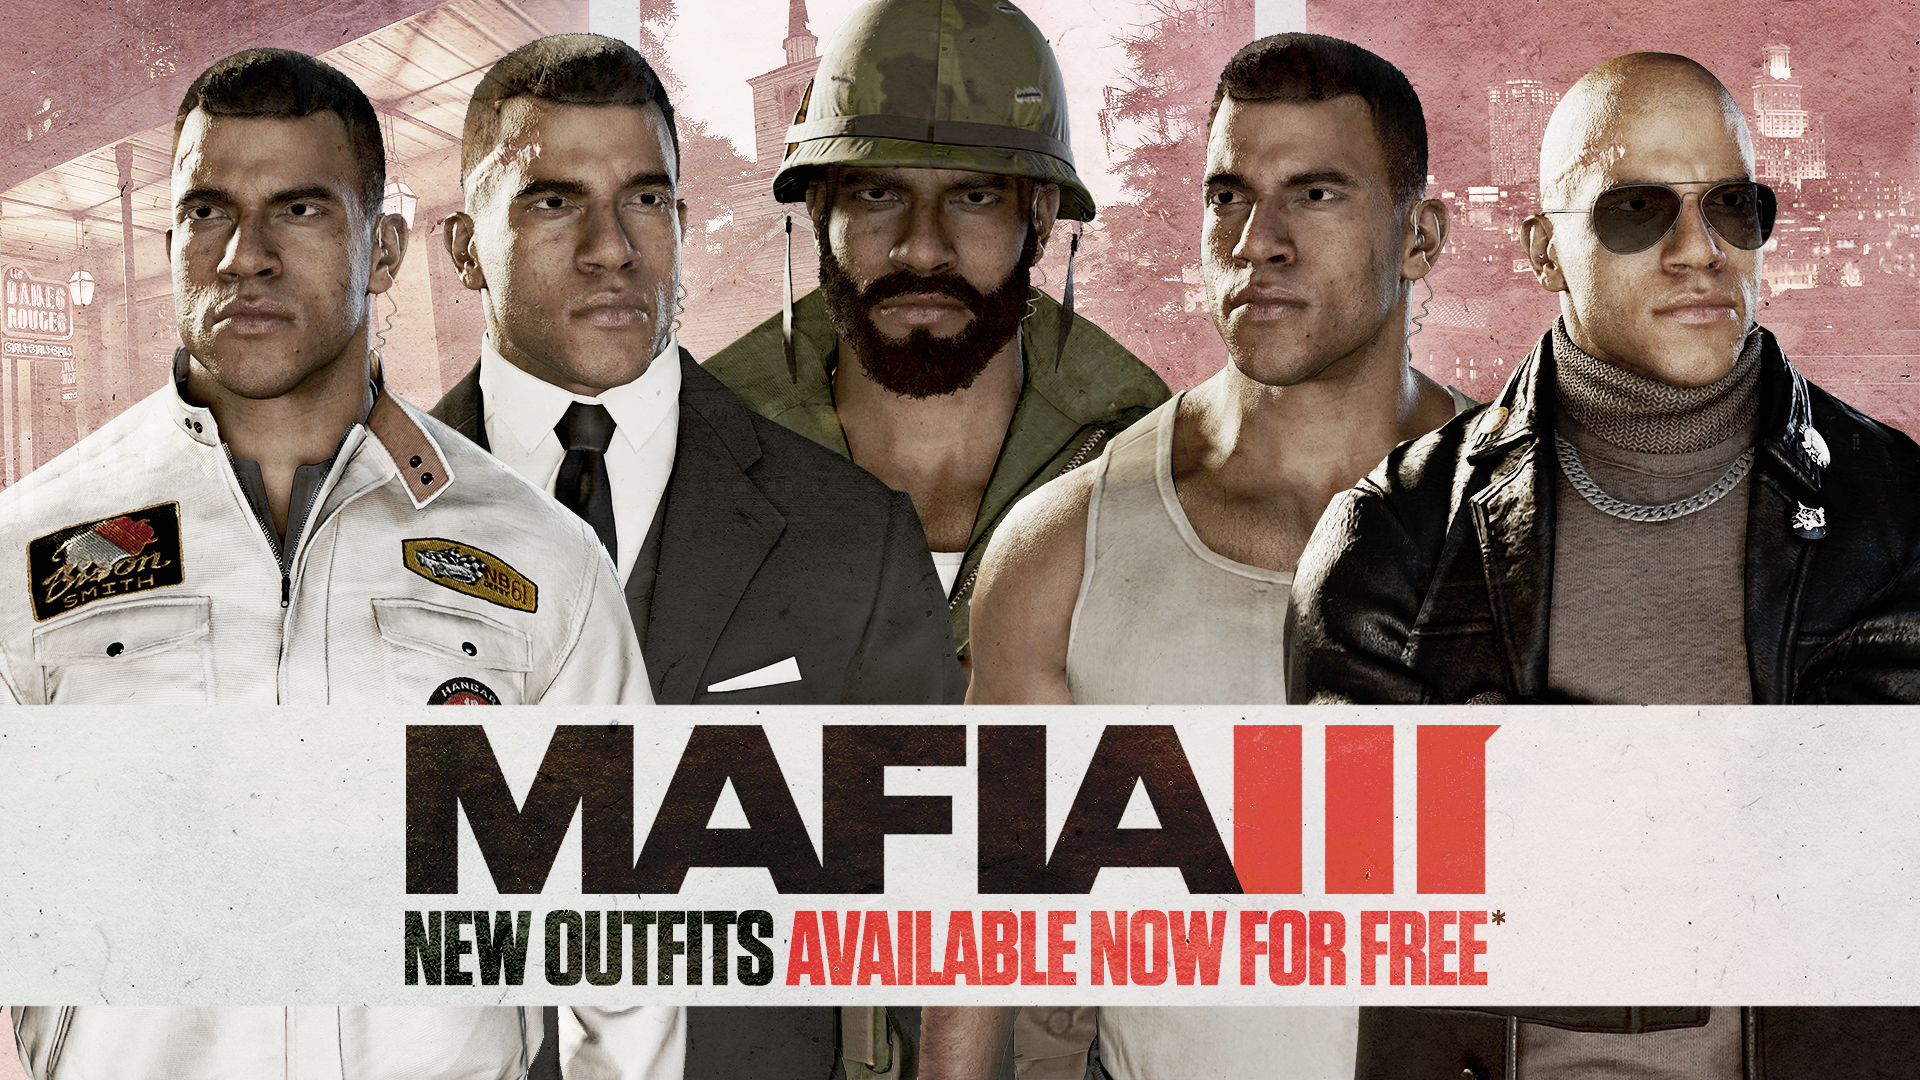 Mafia III: Definitive Edition no Steam